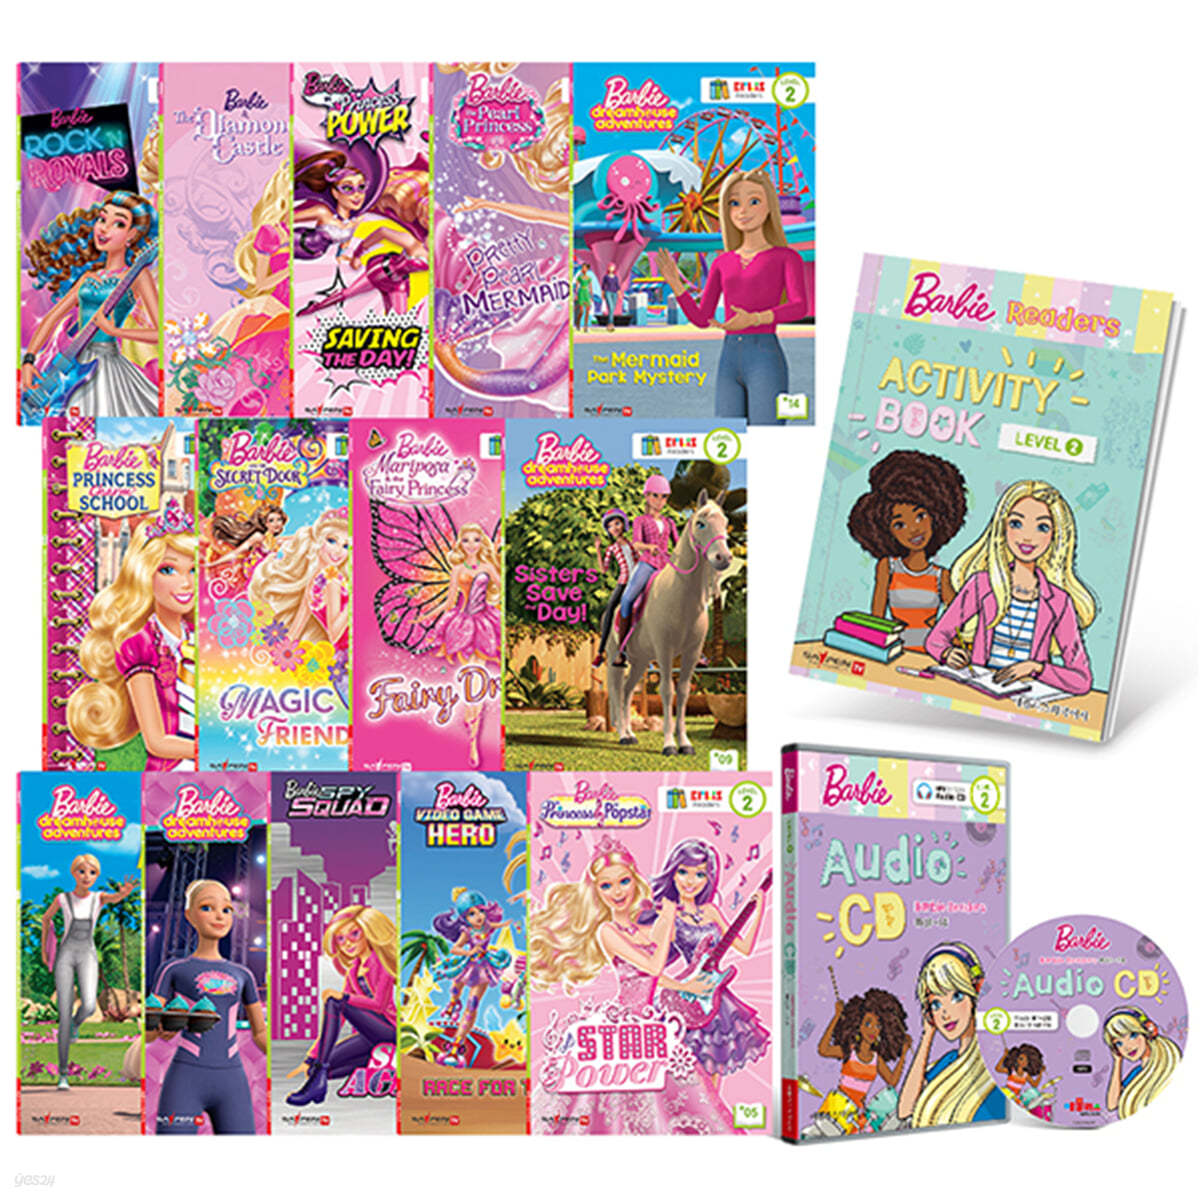 [세이펜BOOK] Barbie 바비 리더스북 레벨 2 : 리더스북 14권 + MP3 오디오 CD 1장 + 액티비티북 1권